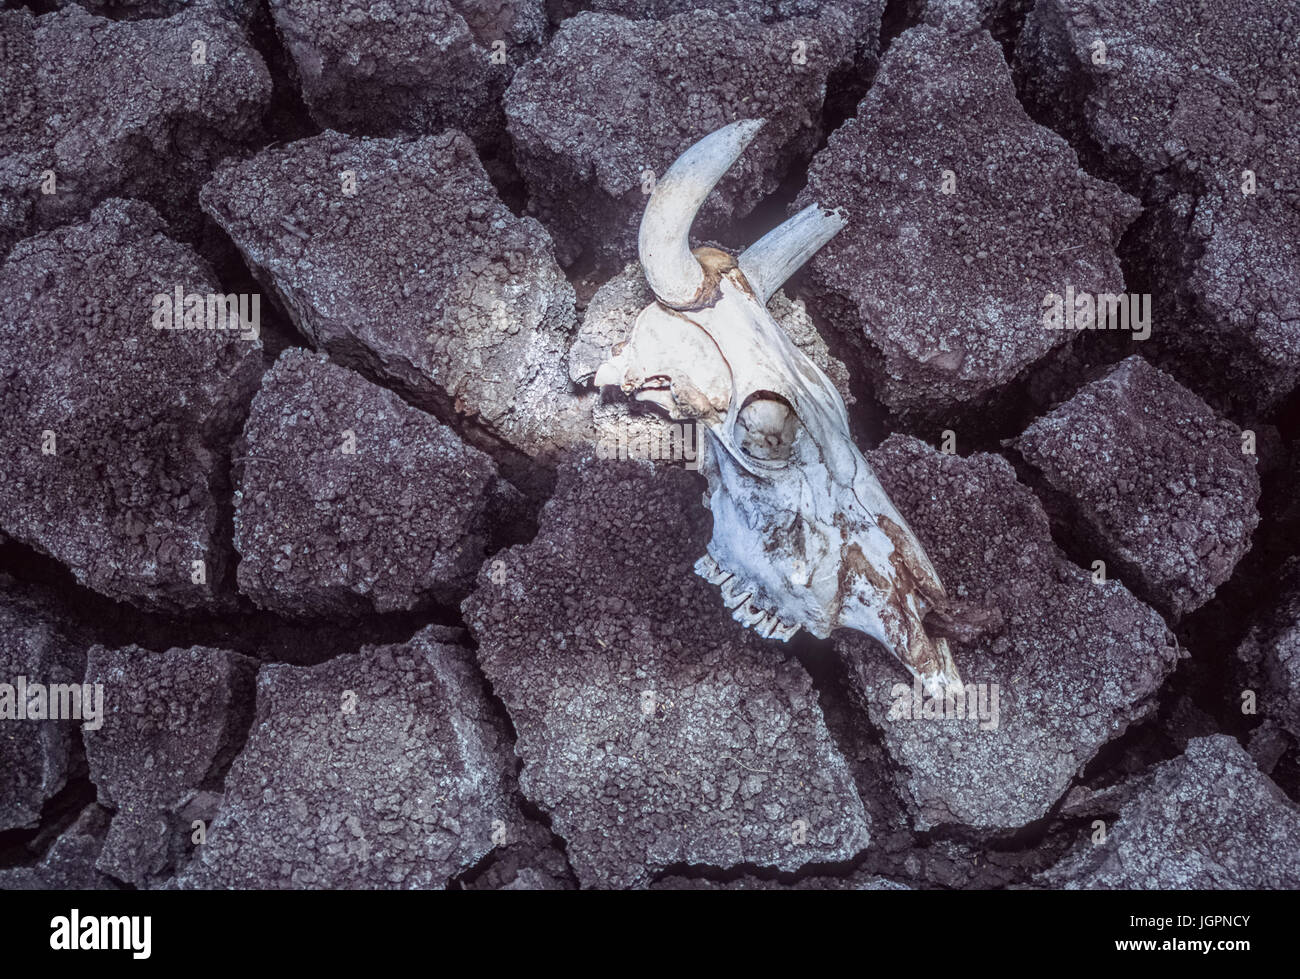 Crâne de vache zébu (Bos, domesticus), du crâne de la sécheresse victime se trouve sur la boue craquelée, Gujarat, Inde Banque D'Images